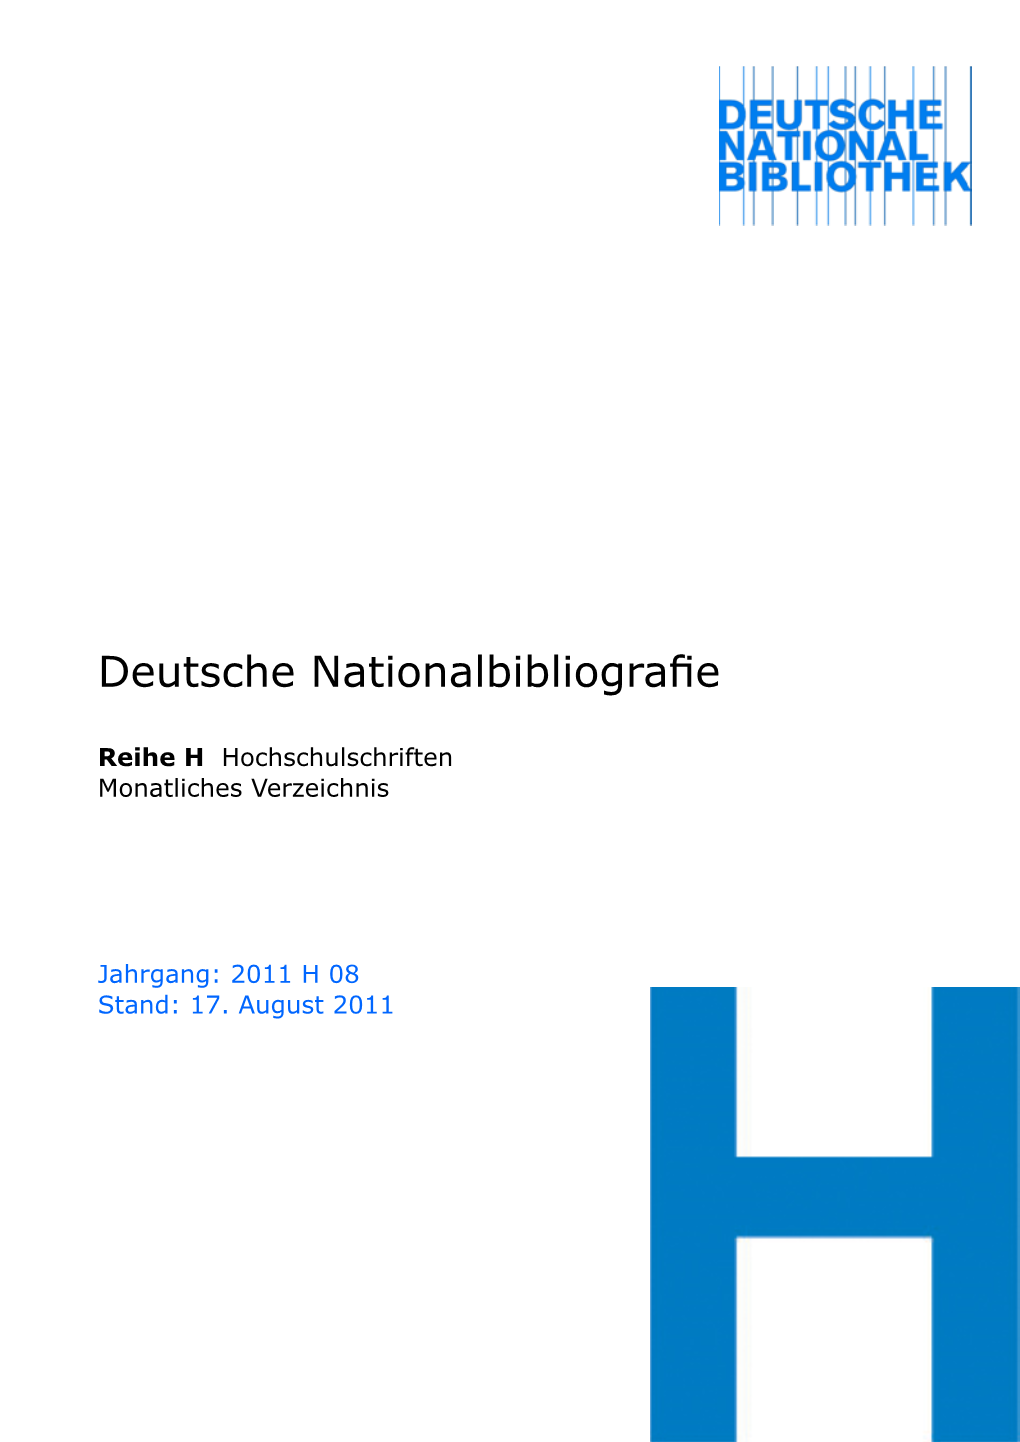 Deutsche Nationalbibliografie 2011 H 08